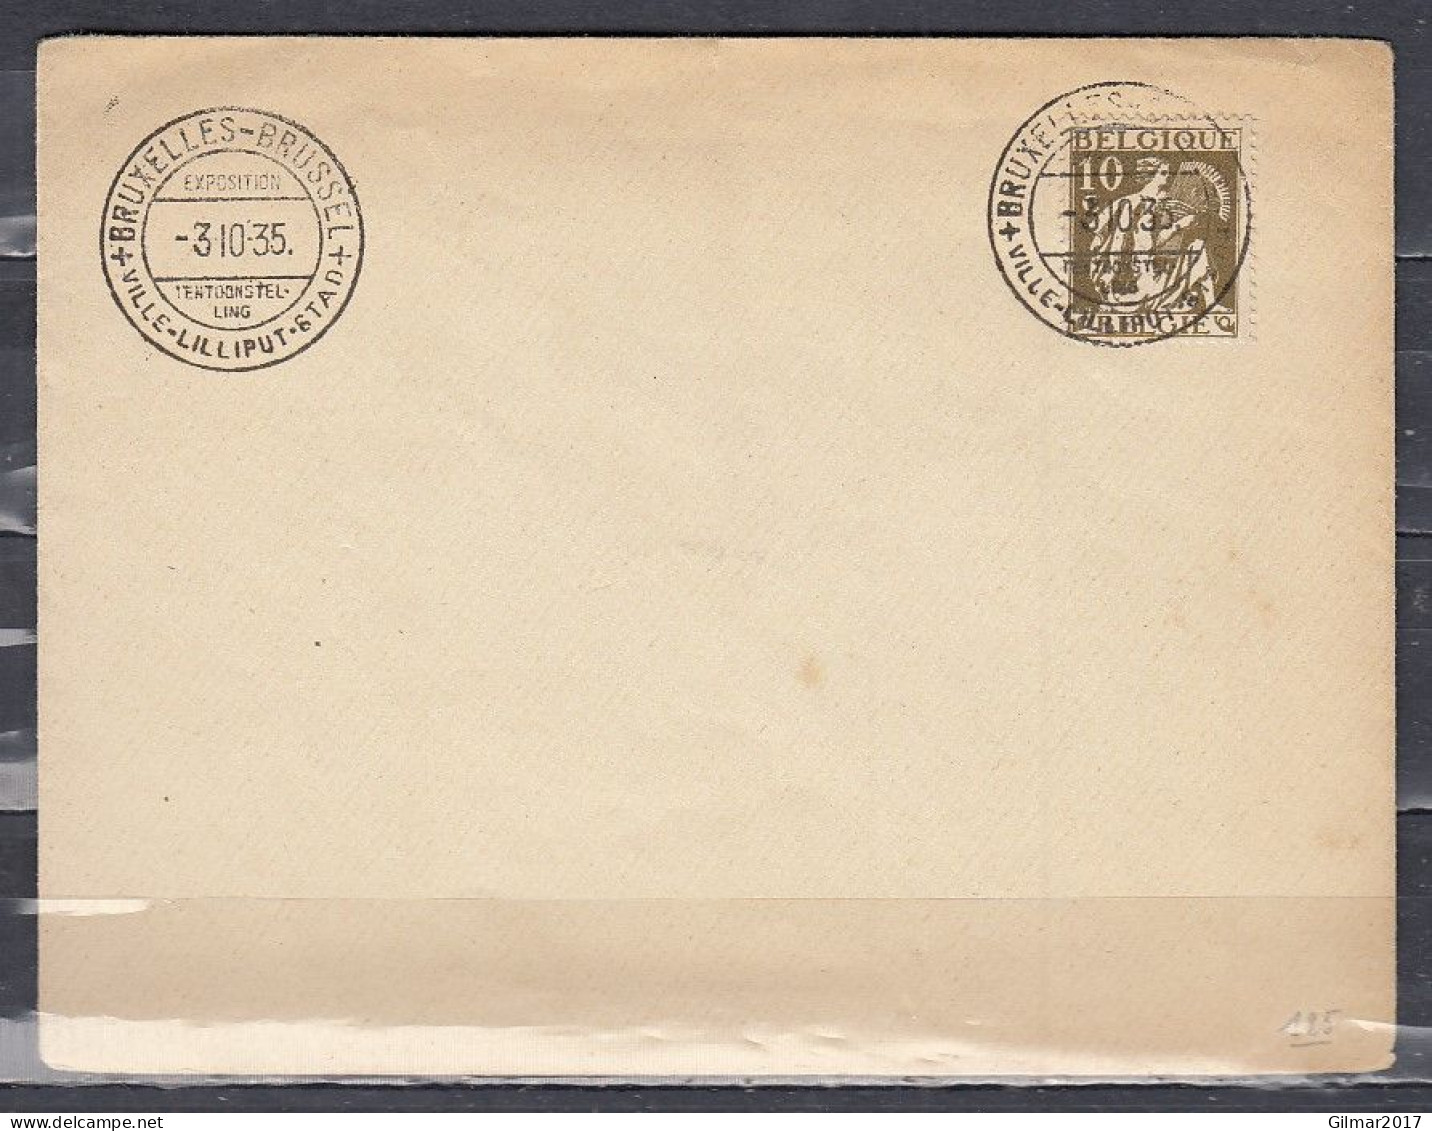 Brief Van Bruxelles-Brussel Ville Lilliput Stad - 1932 Ceres And Mercurius